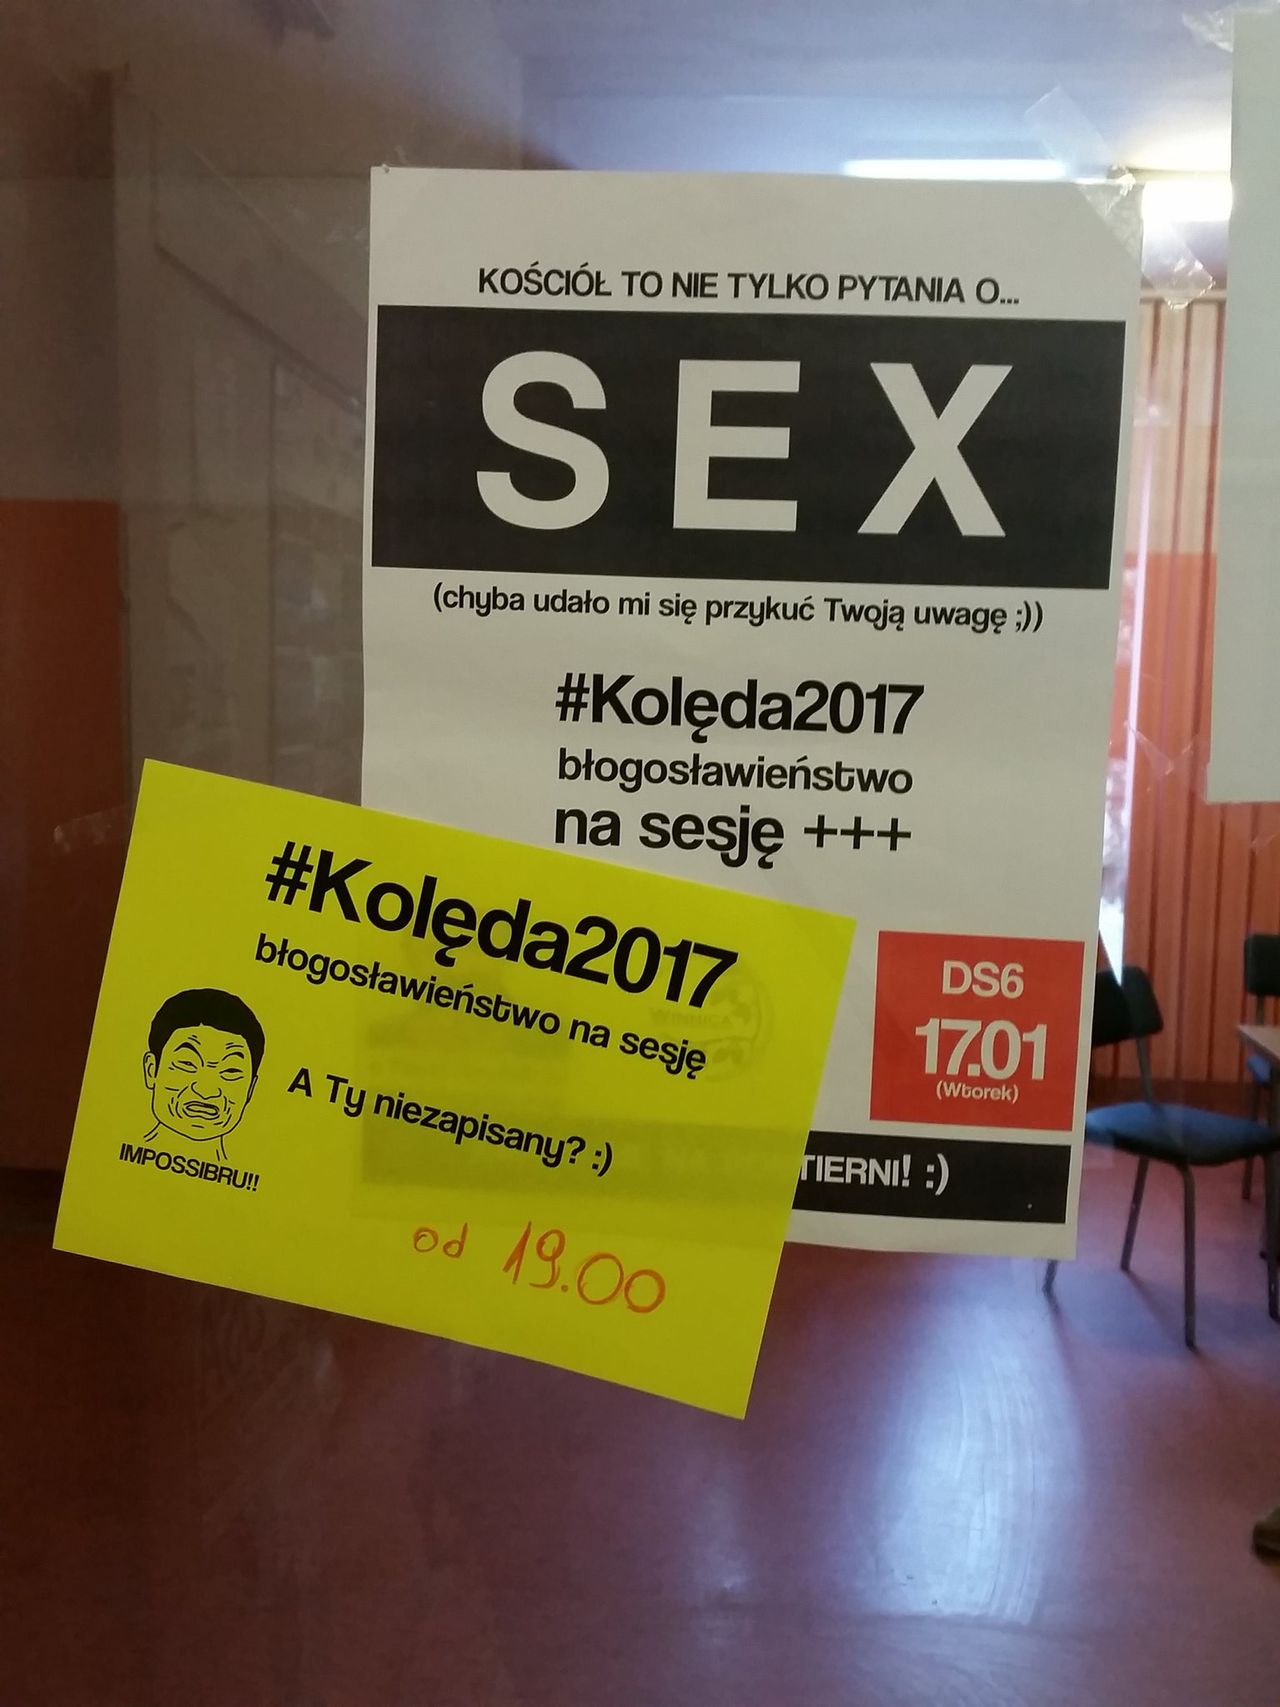 „Kościół to nie tylko pytania o SEX”. Nietypowa zachęta do przyjęcia kolędy w Gdańsku